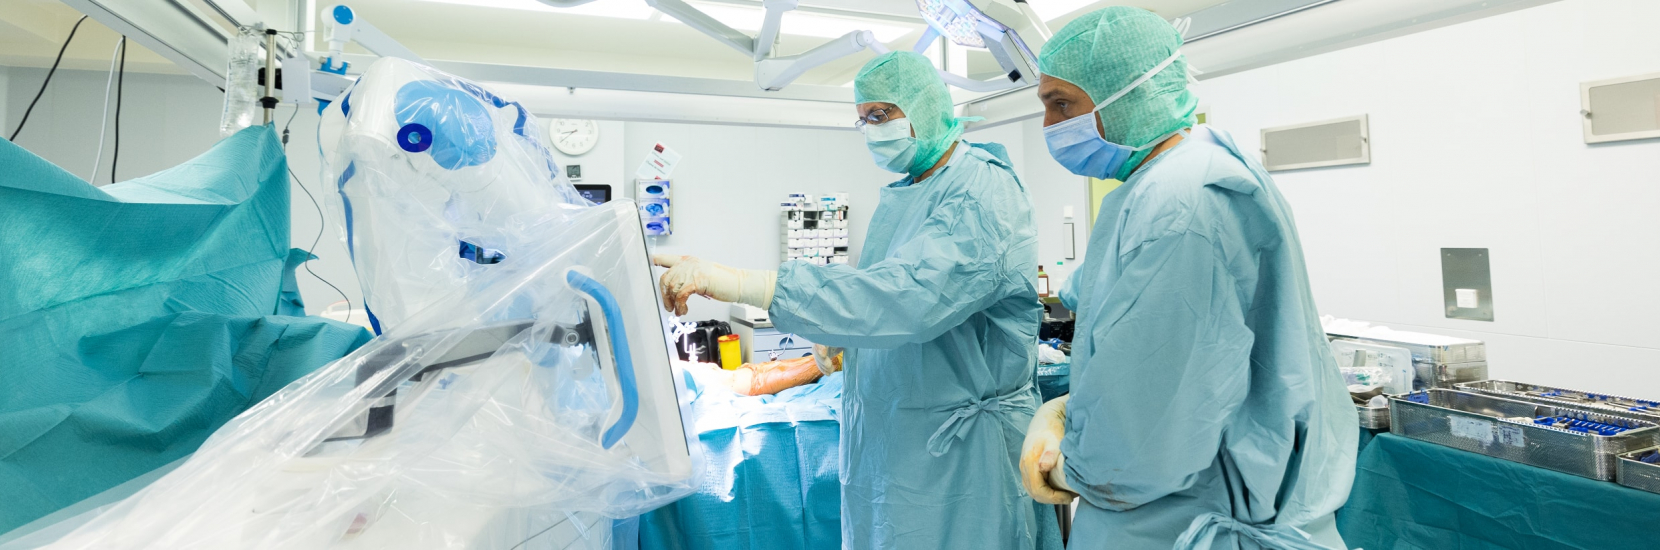 Le CHL fait l’acquisition d’un nouvel assistant chirurgical robotique pour la pose des prothèses de genou